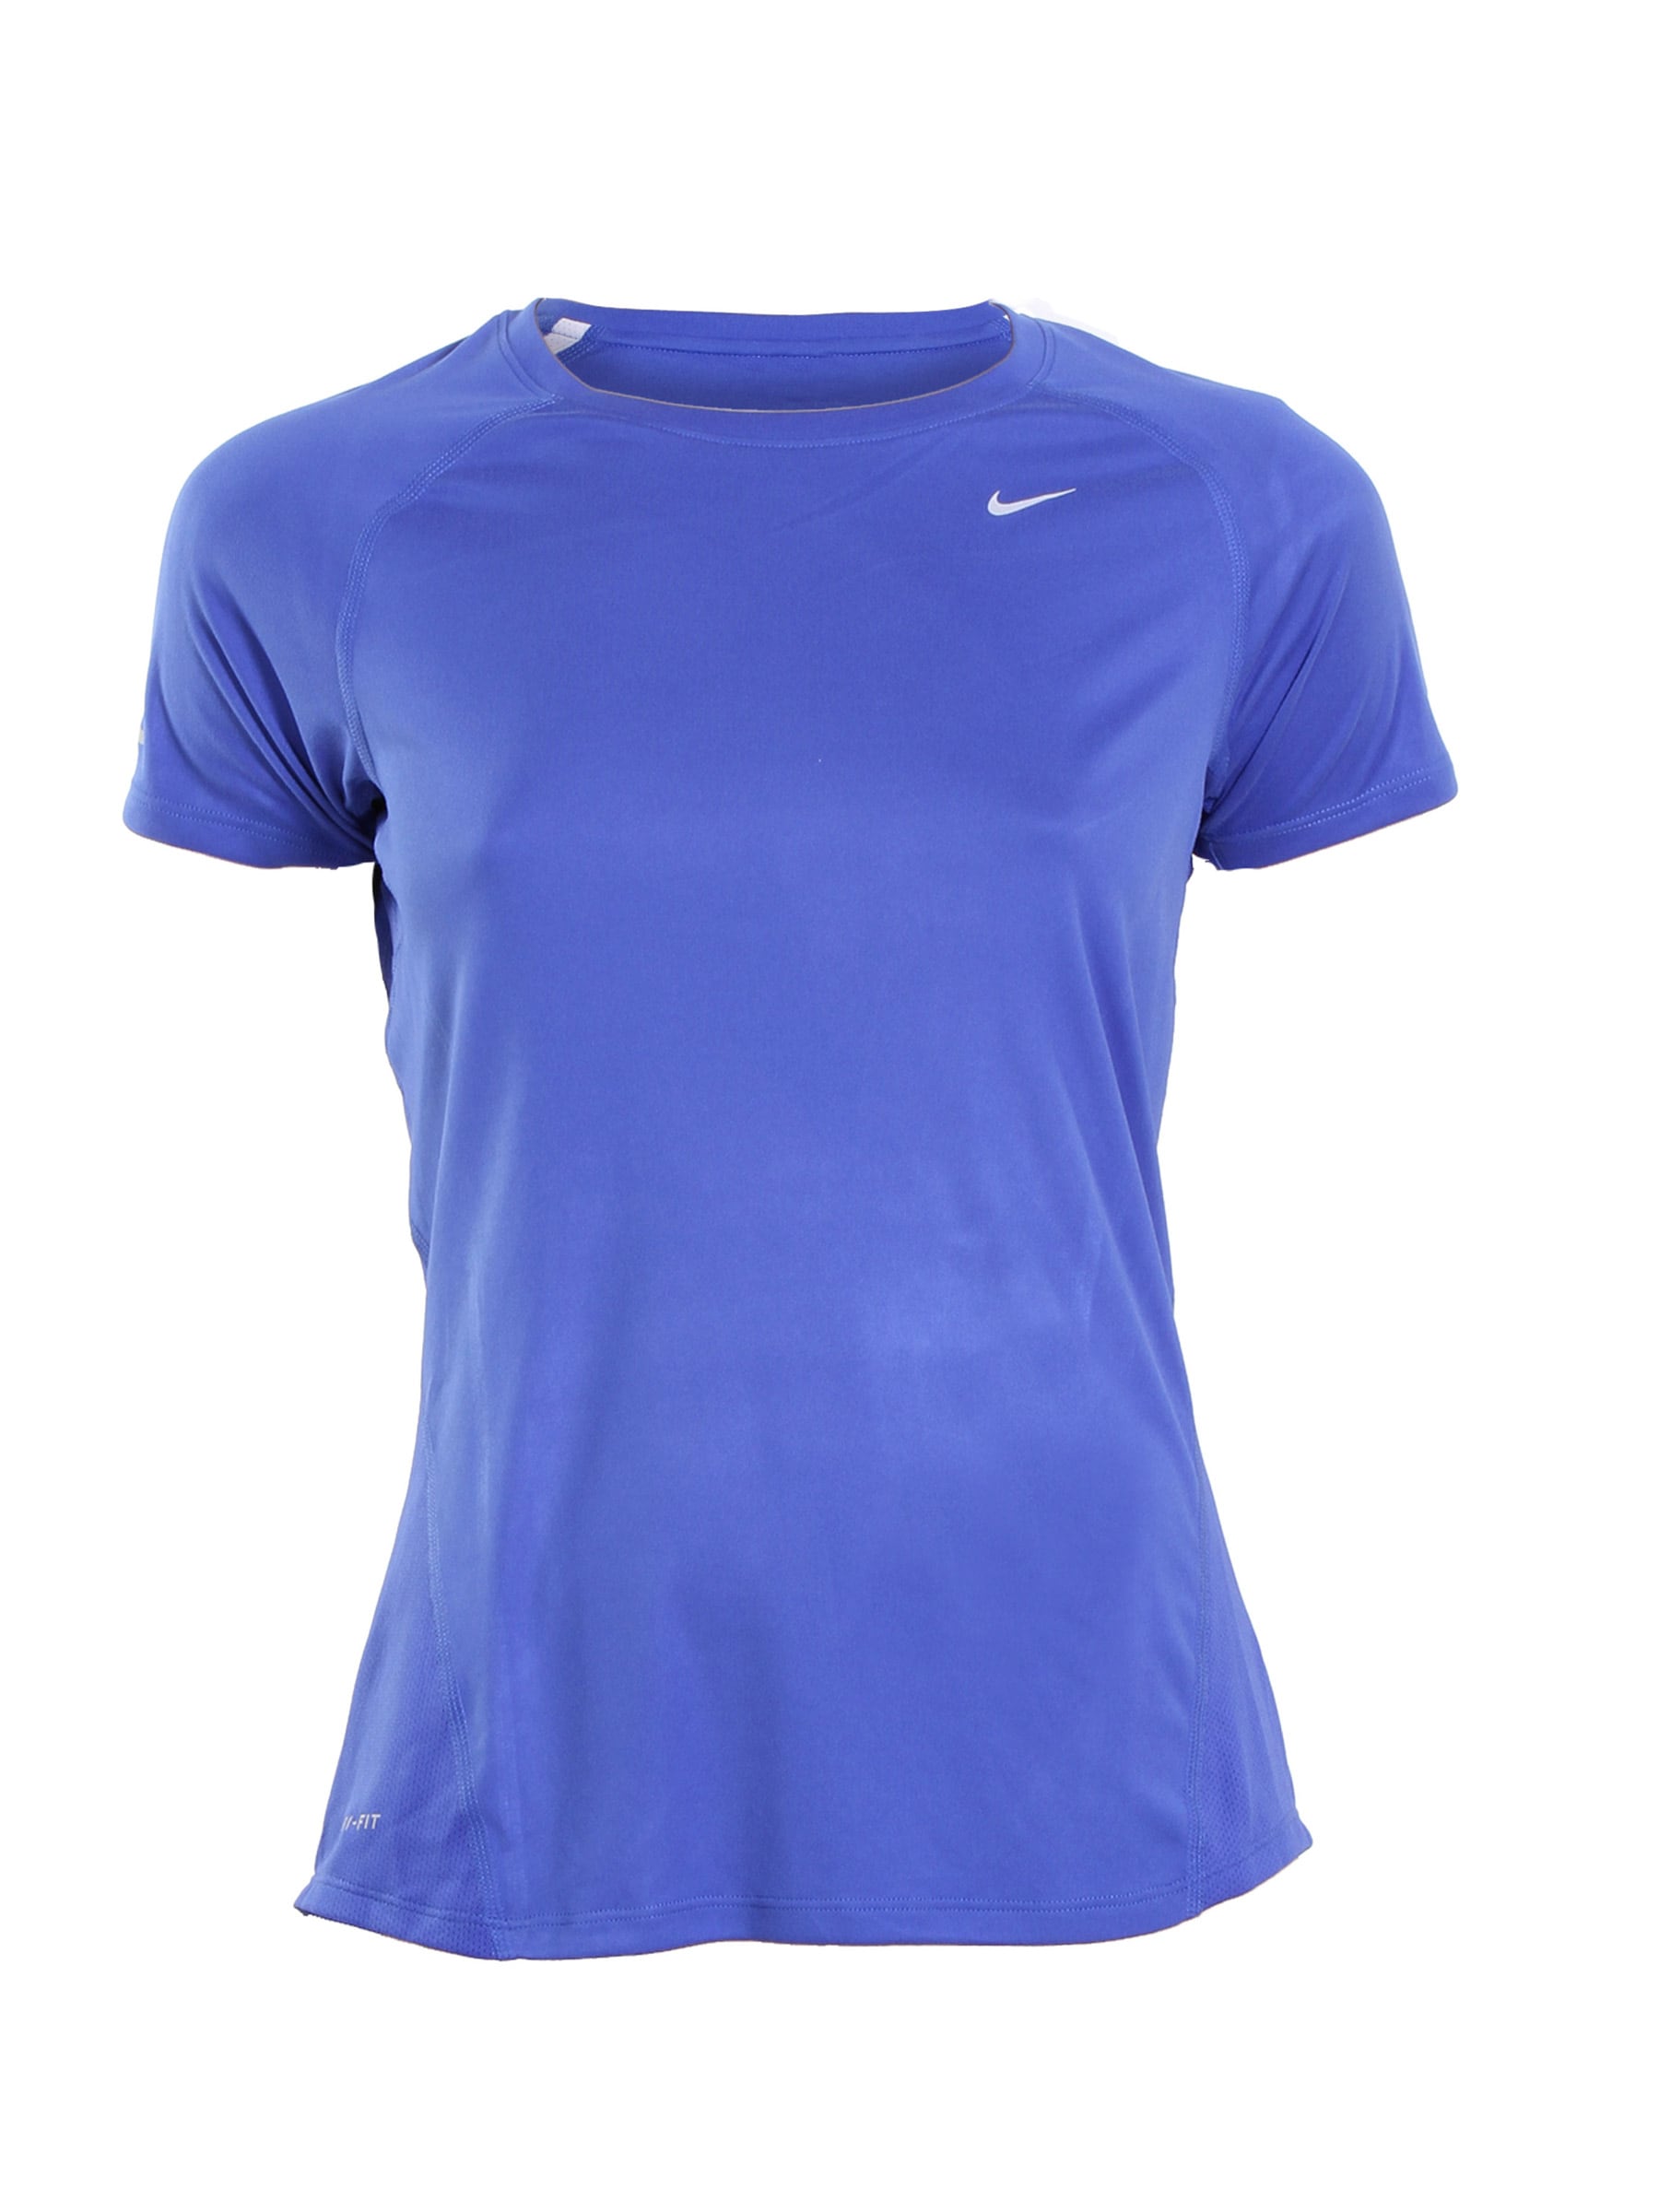 Nike Women Miller Blue T-shirt